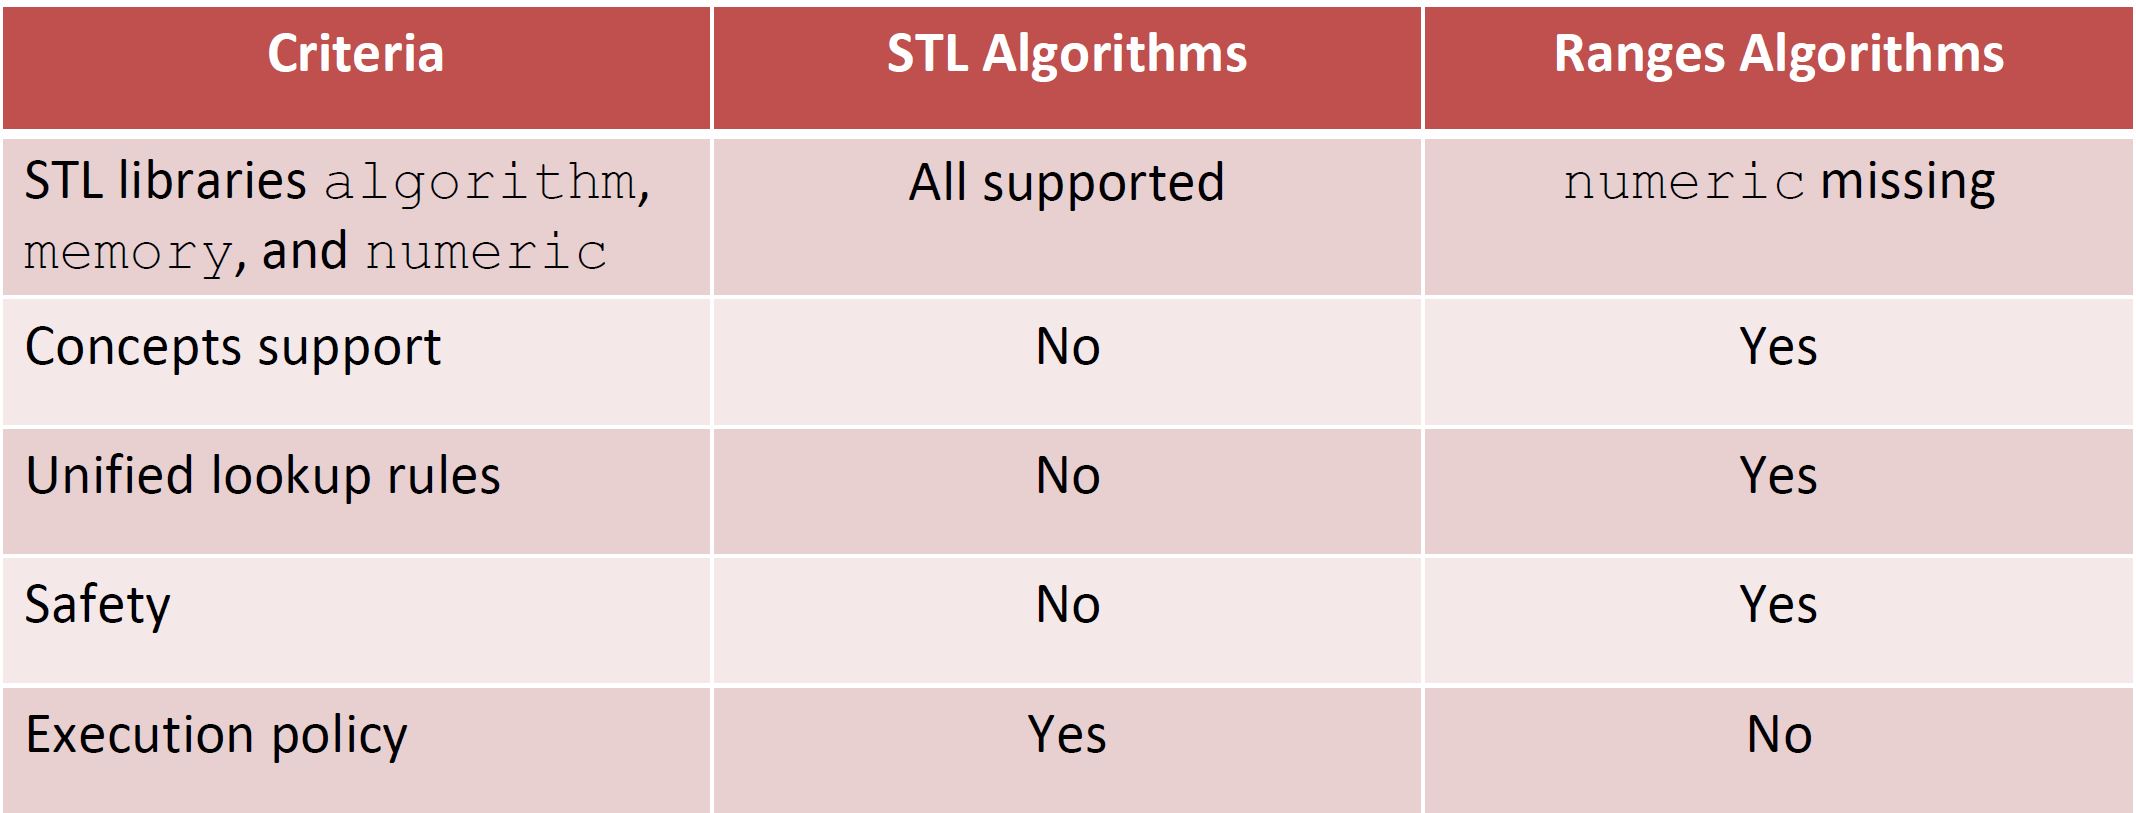 AlgorithmsComparison